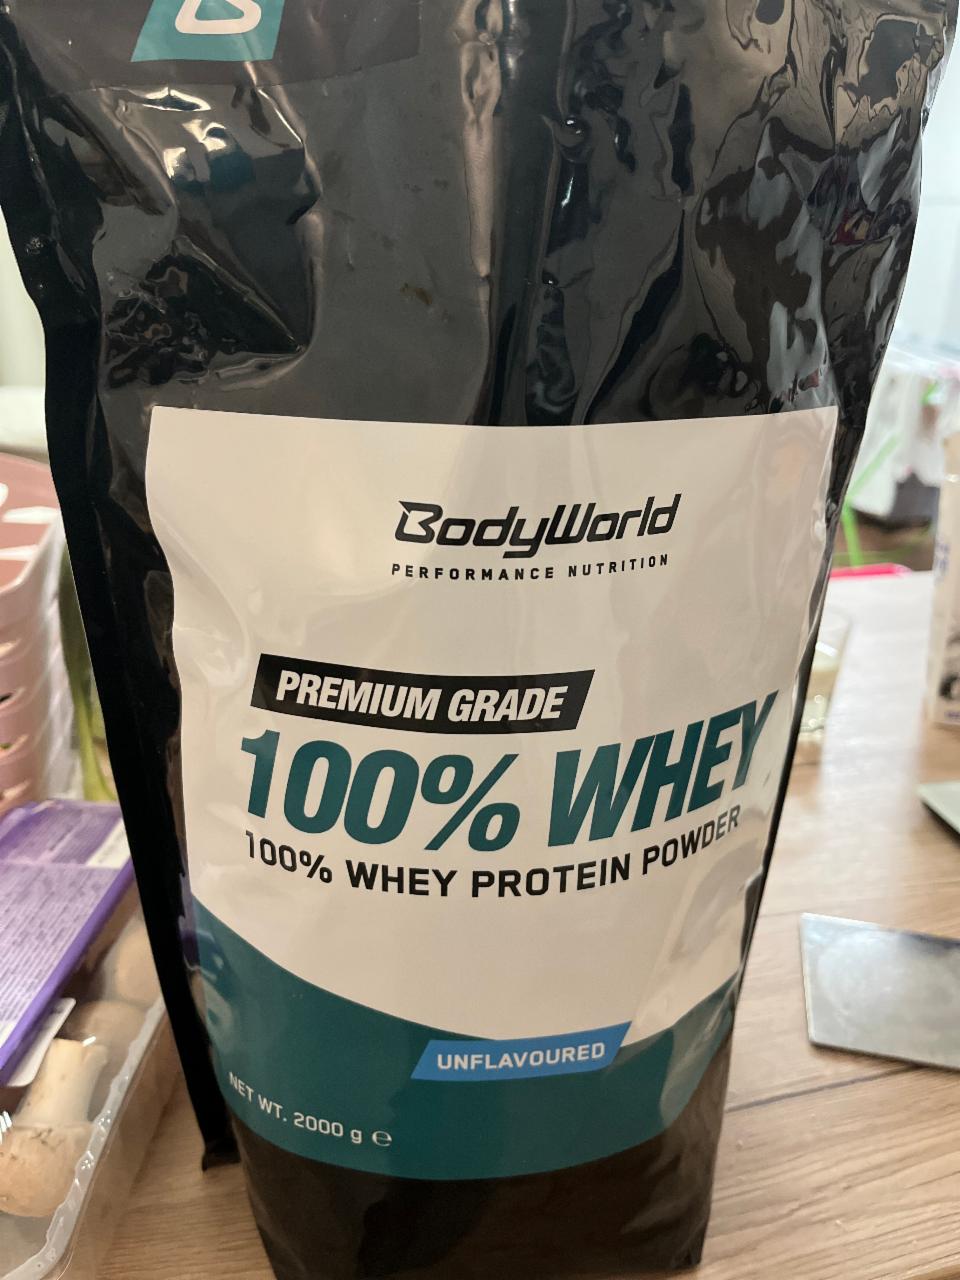 Fotografie - 100% Whey protein powder unflavoured BodyWorld